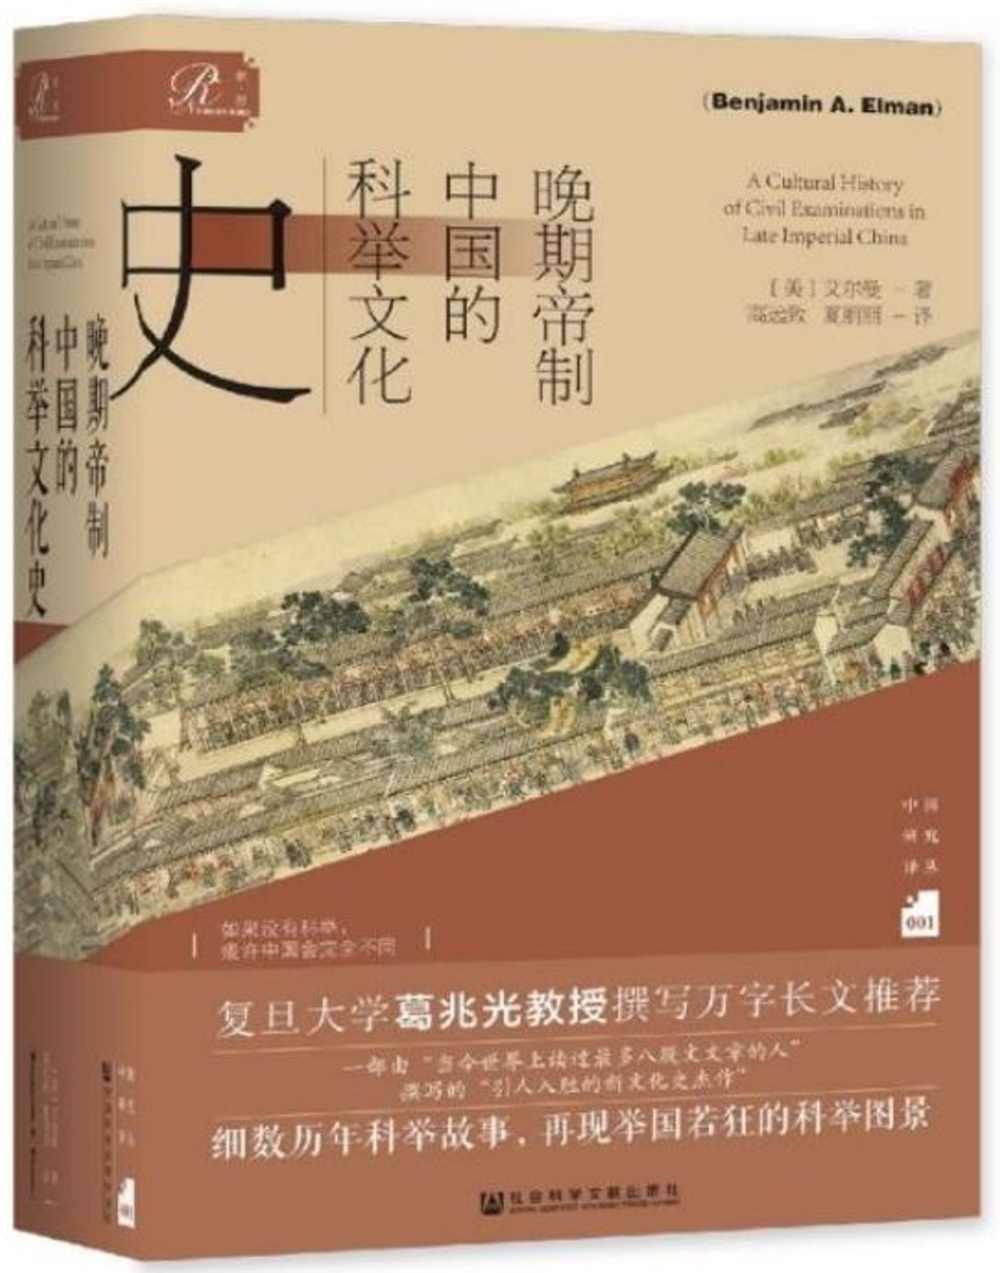 晚期帝制中國的科舉文化史